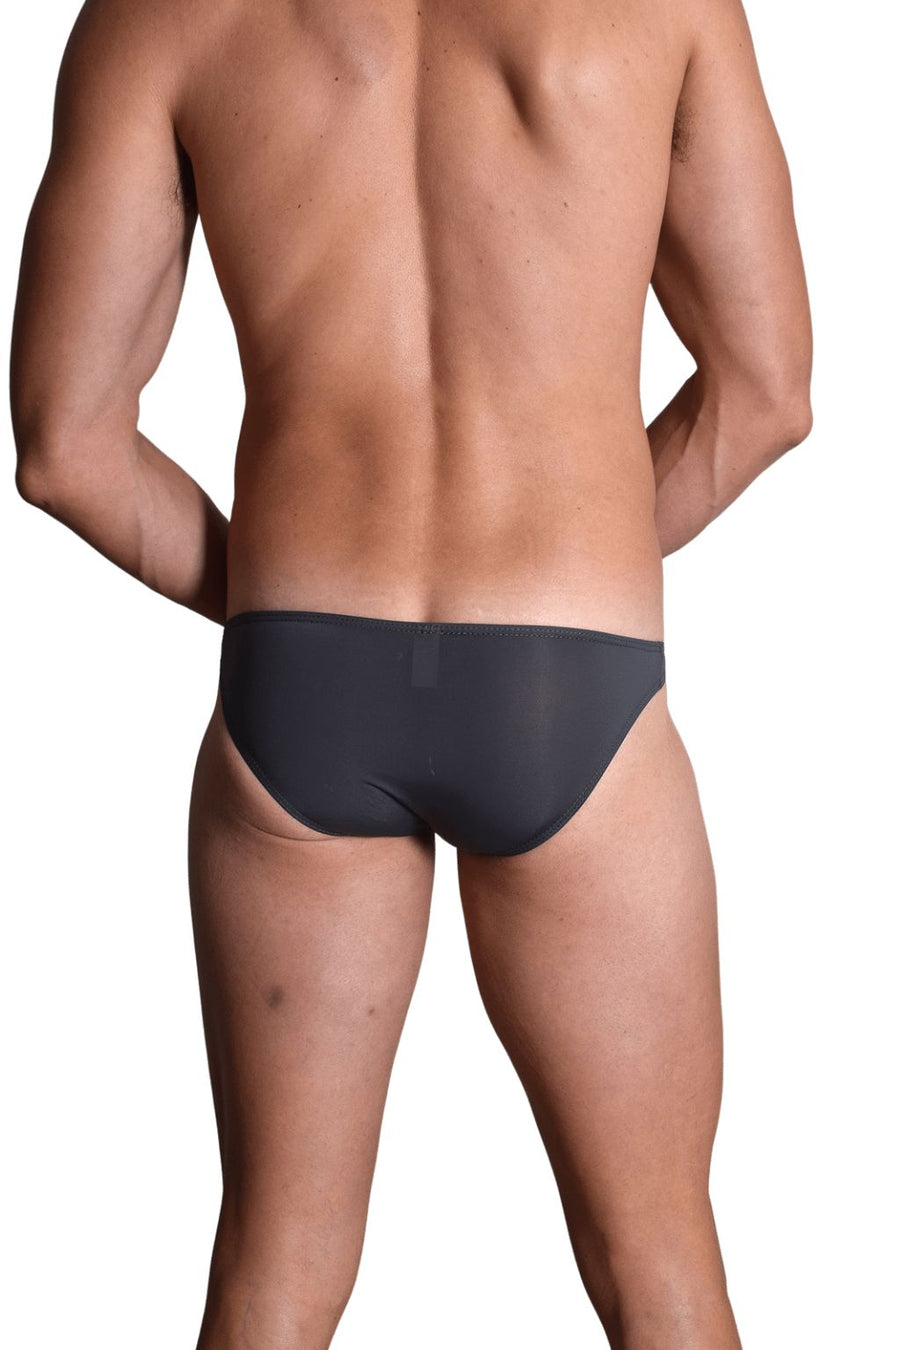 Men's Bikini Dark Grey - Men's Underwear with Pouch